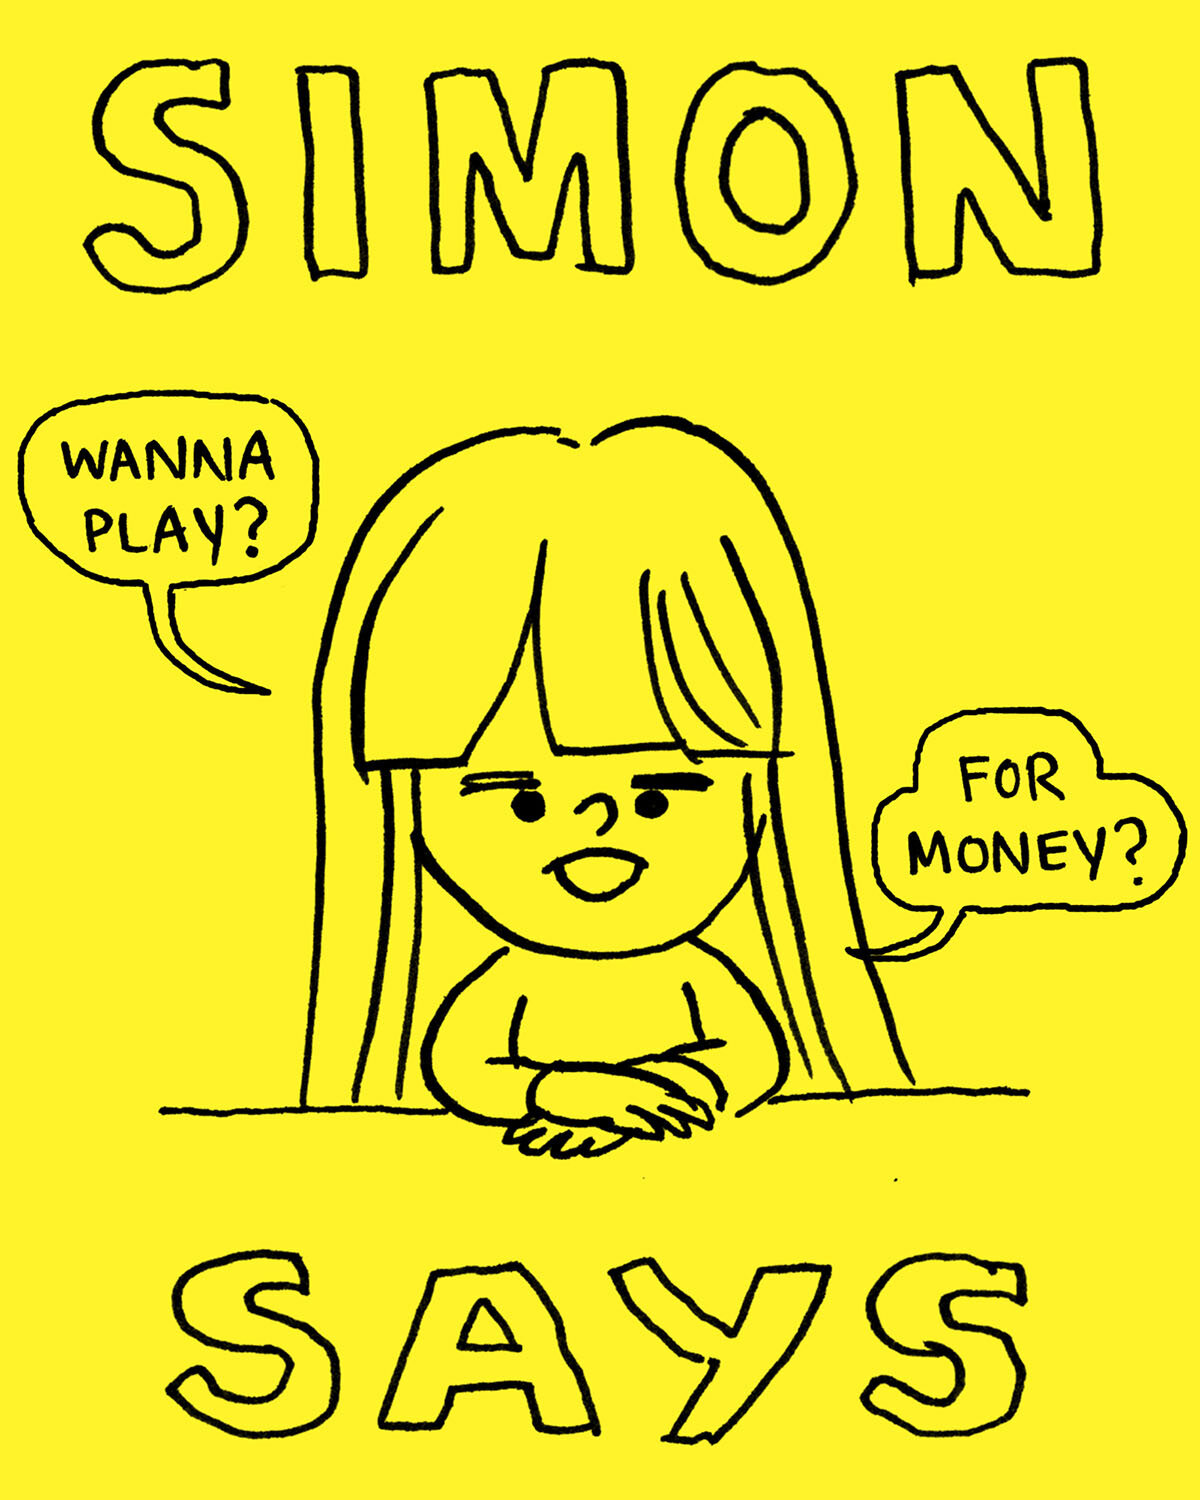 Simon Says 